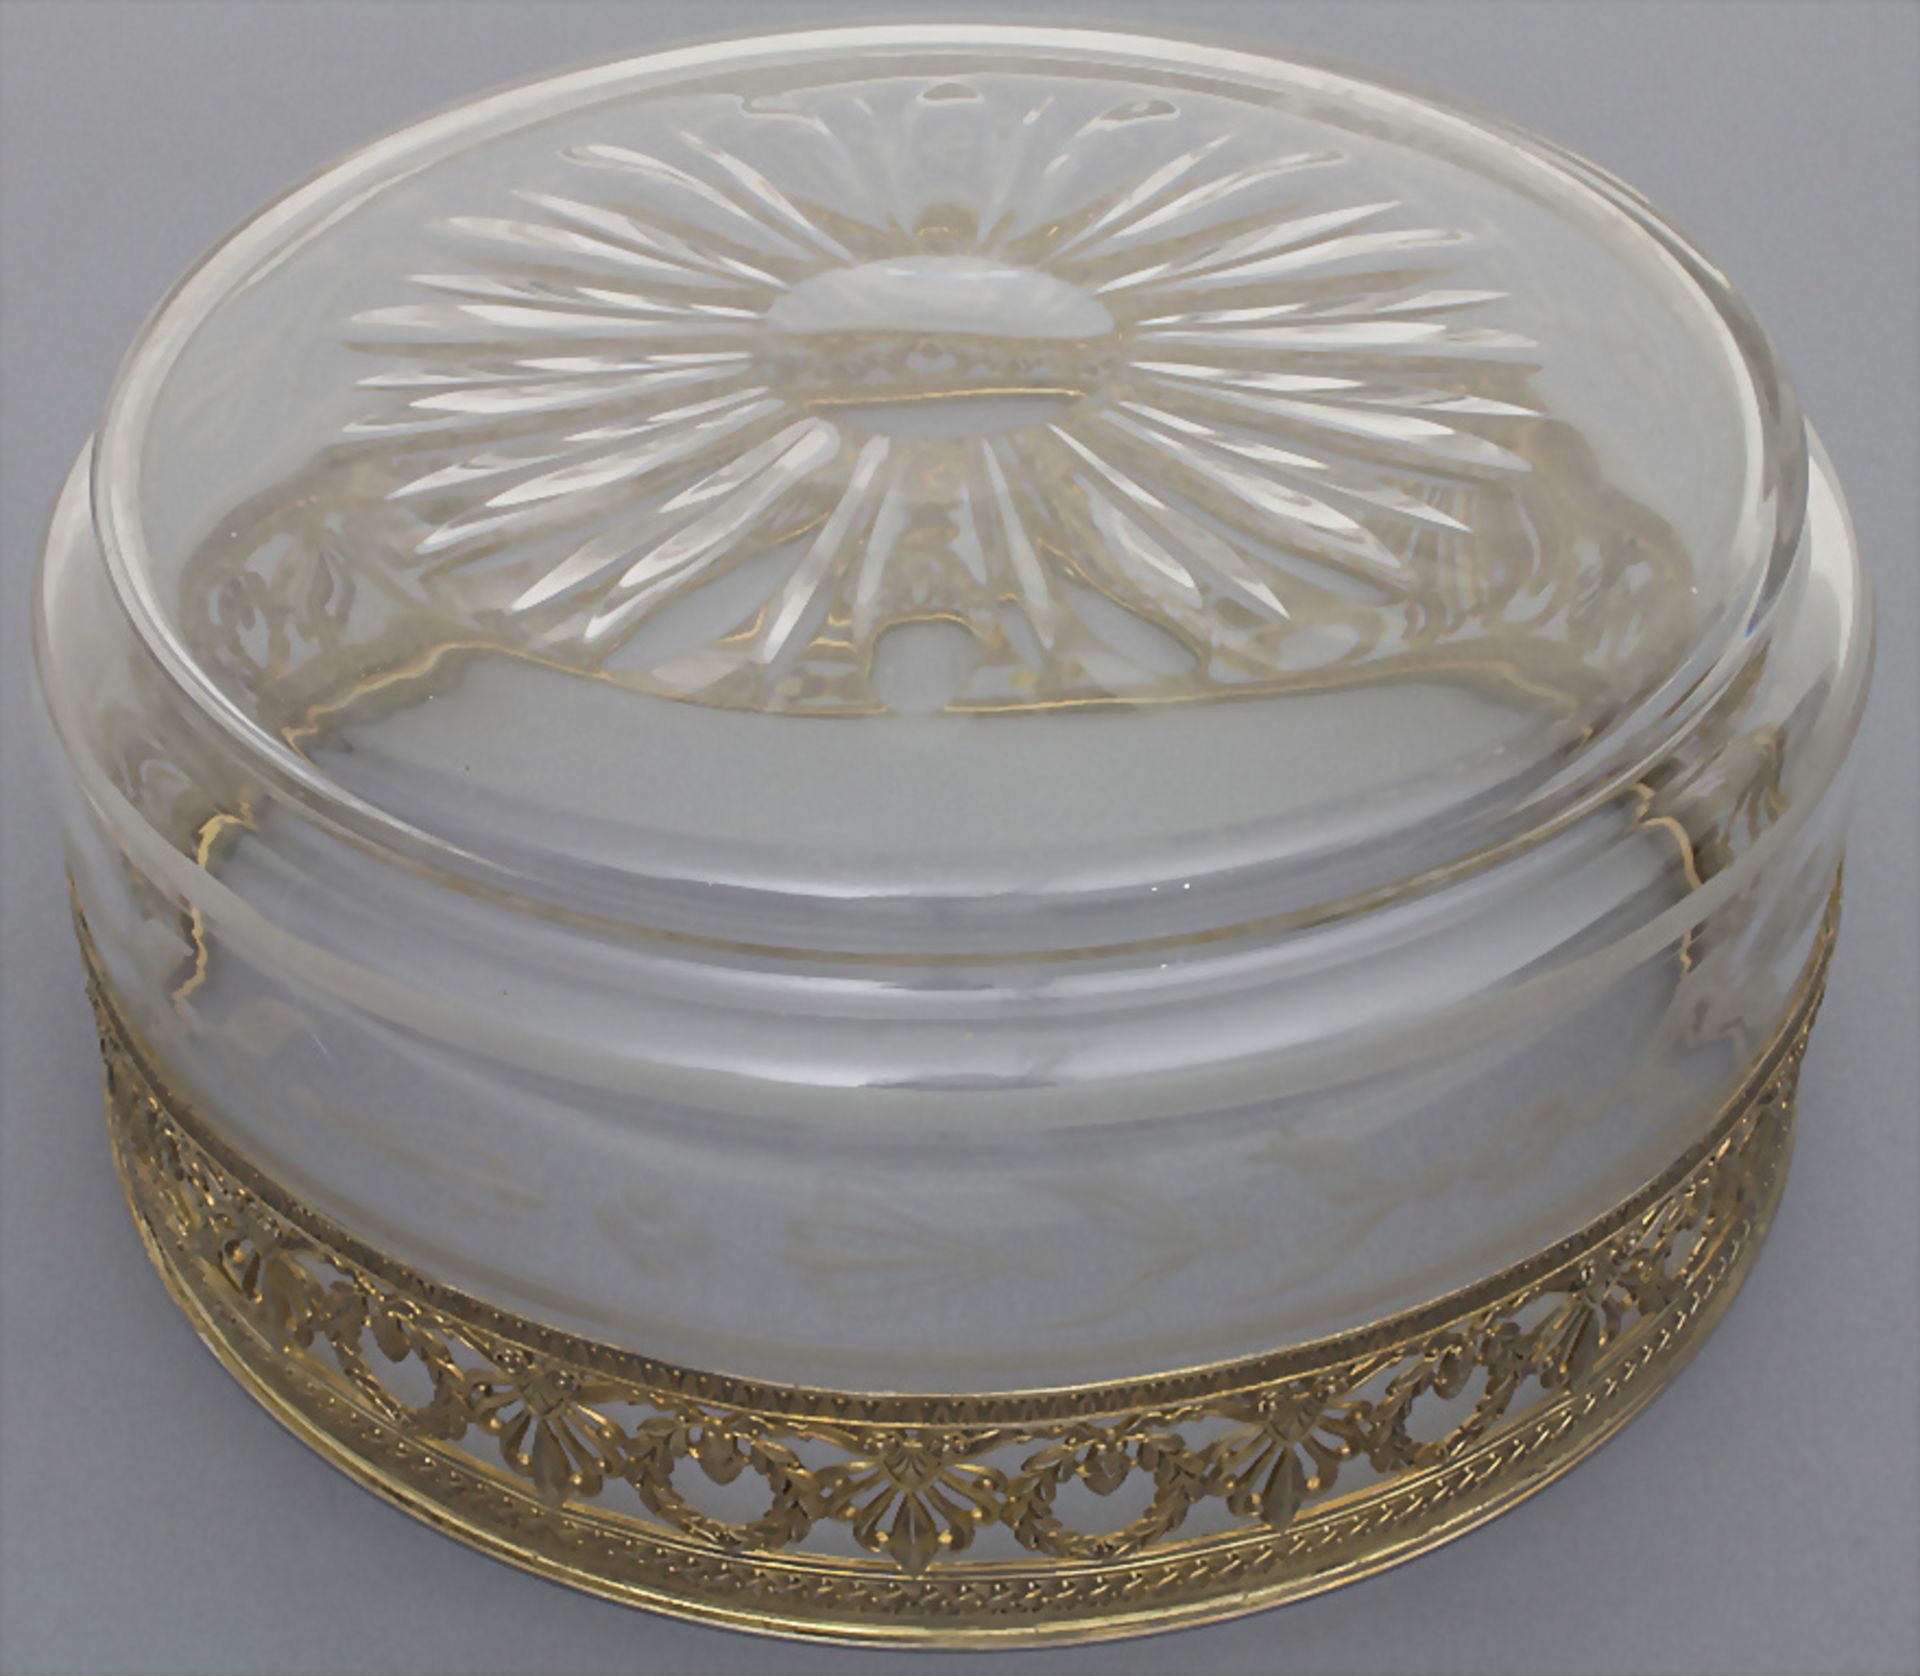 Kristallschale mit Silbermontur / A crystal bowl with silver mount, Emile Puiforcat, Paris, um 1900 - Image 2 of 4